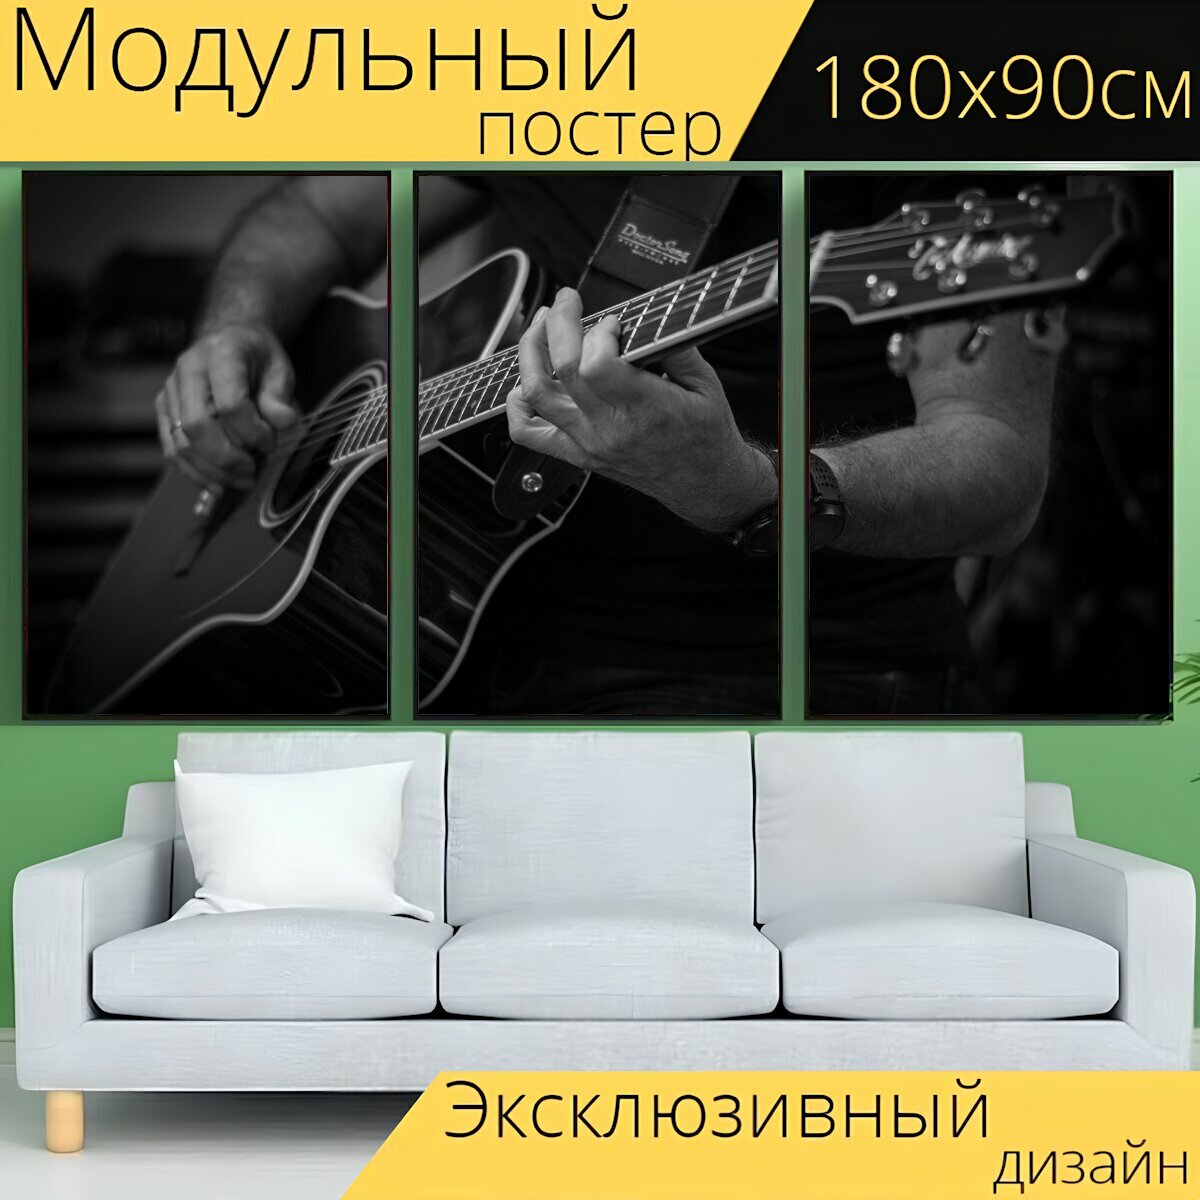 Модульный постер "Гитара, гитарист, рукоять гитары" 180 x 90 см. для интерьера